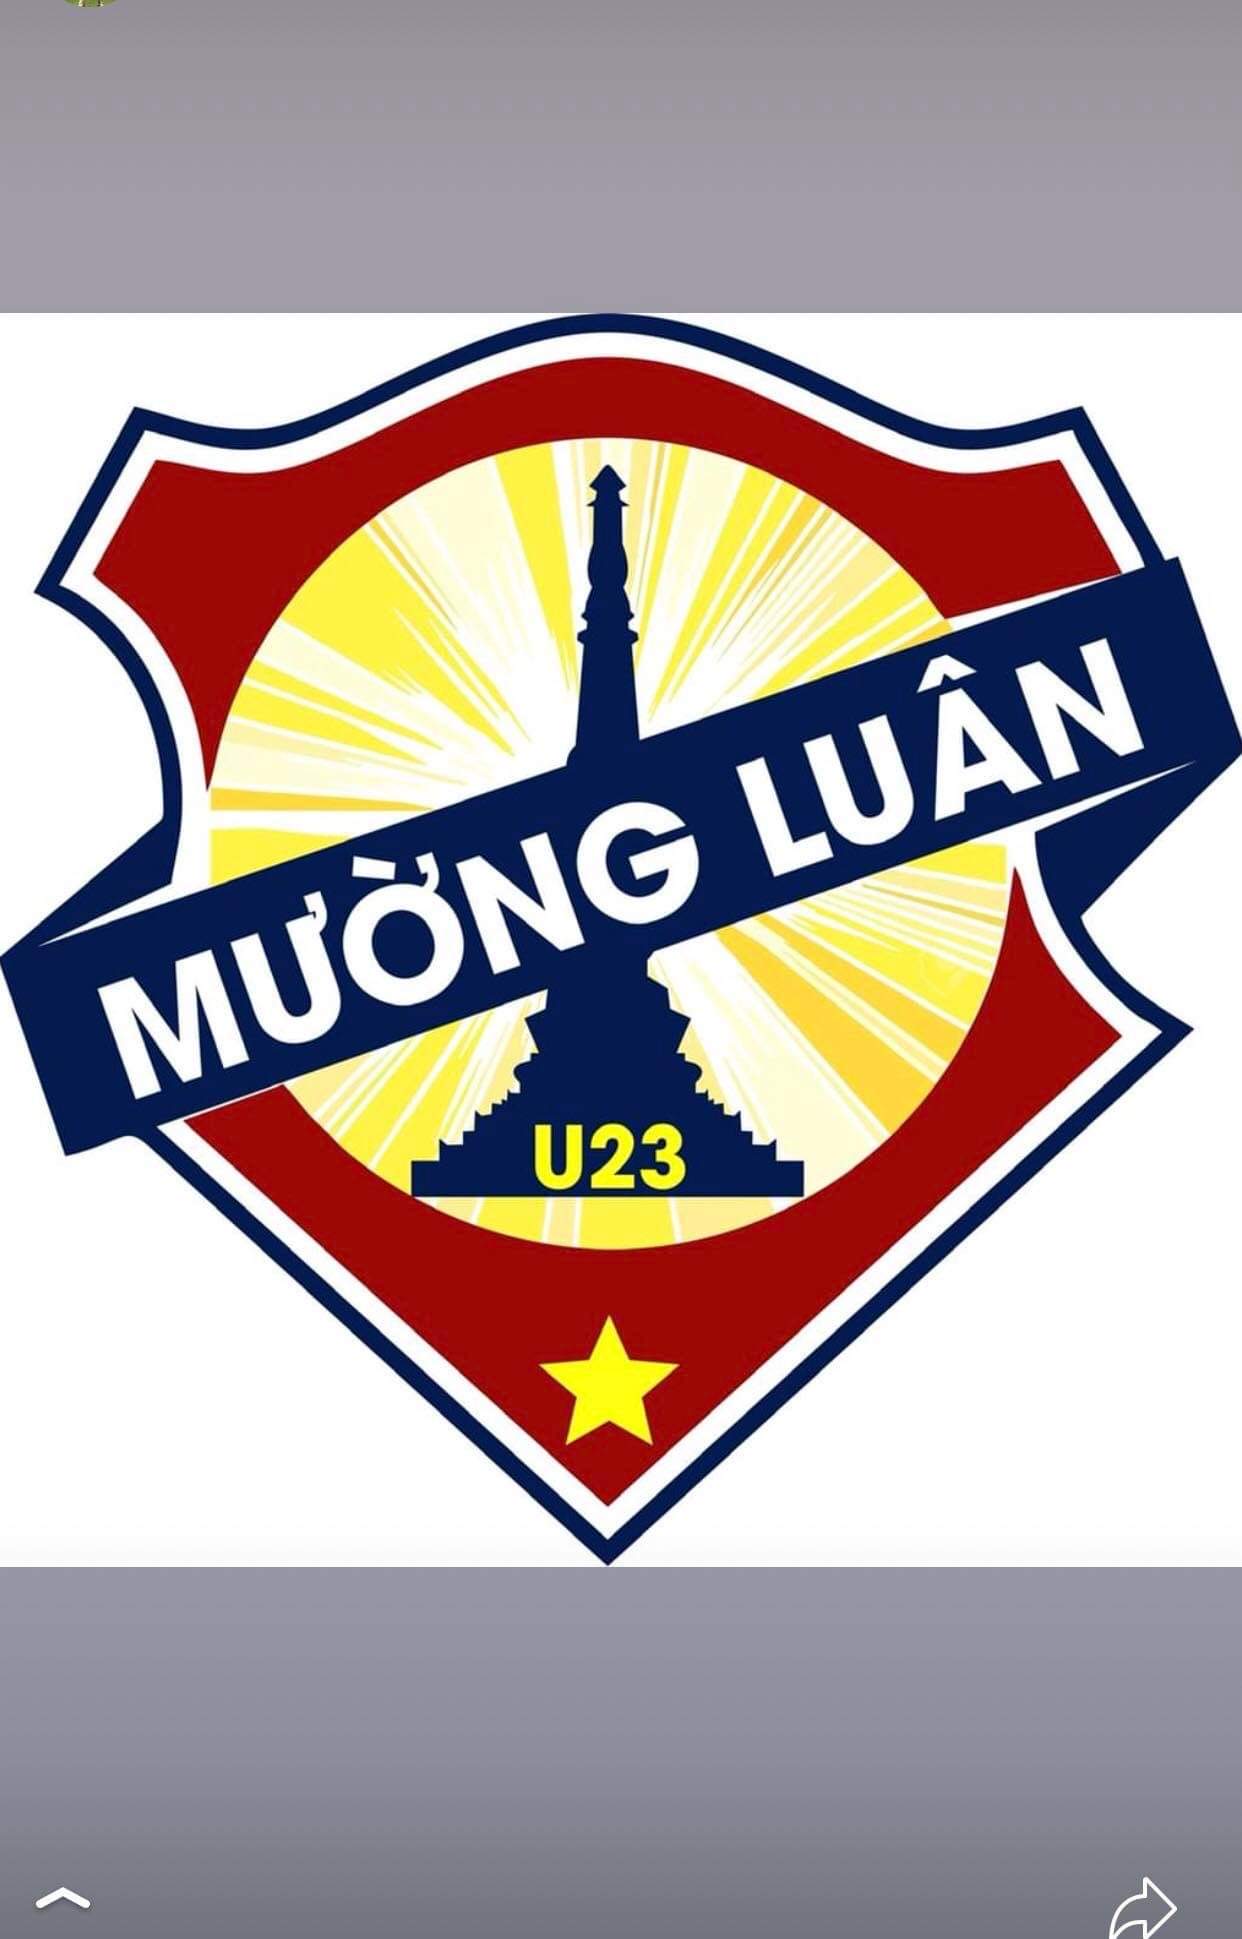 U23 Mường Luân